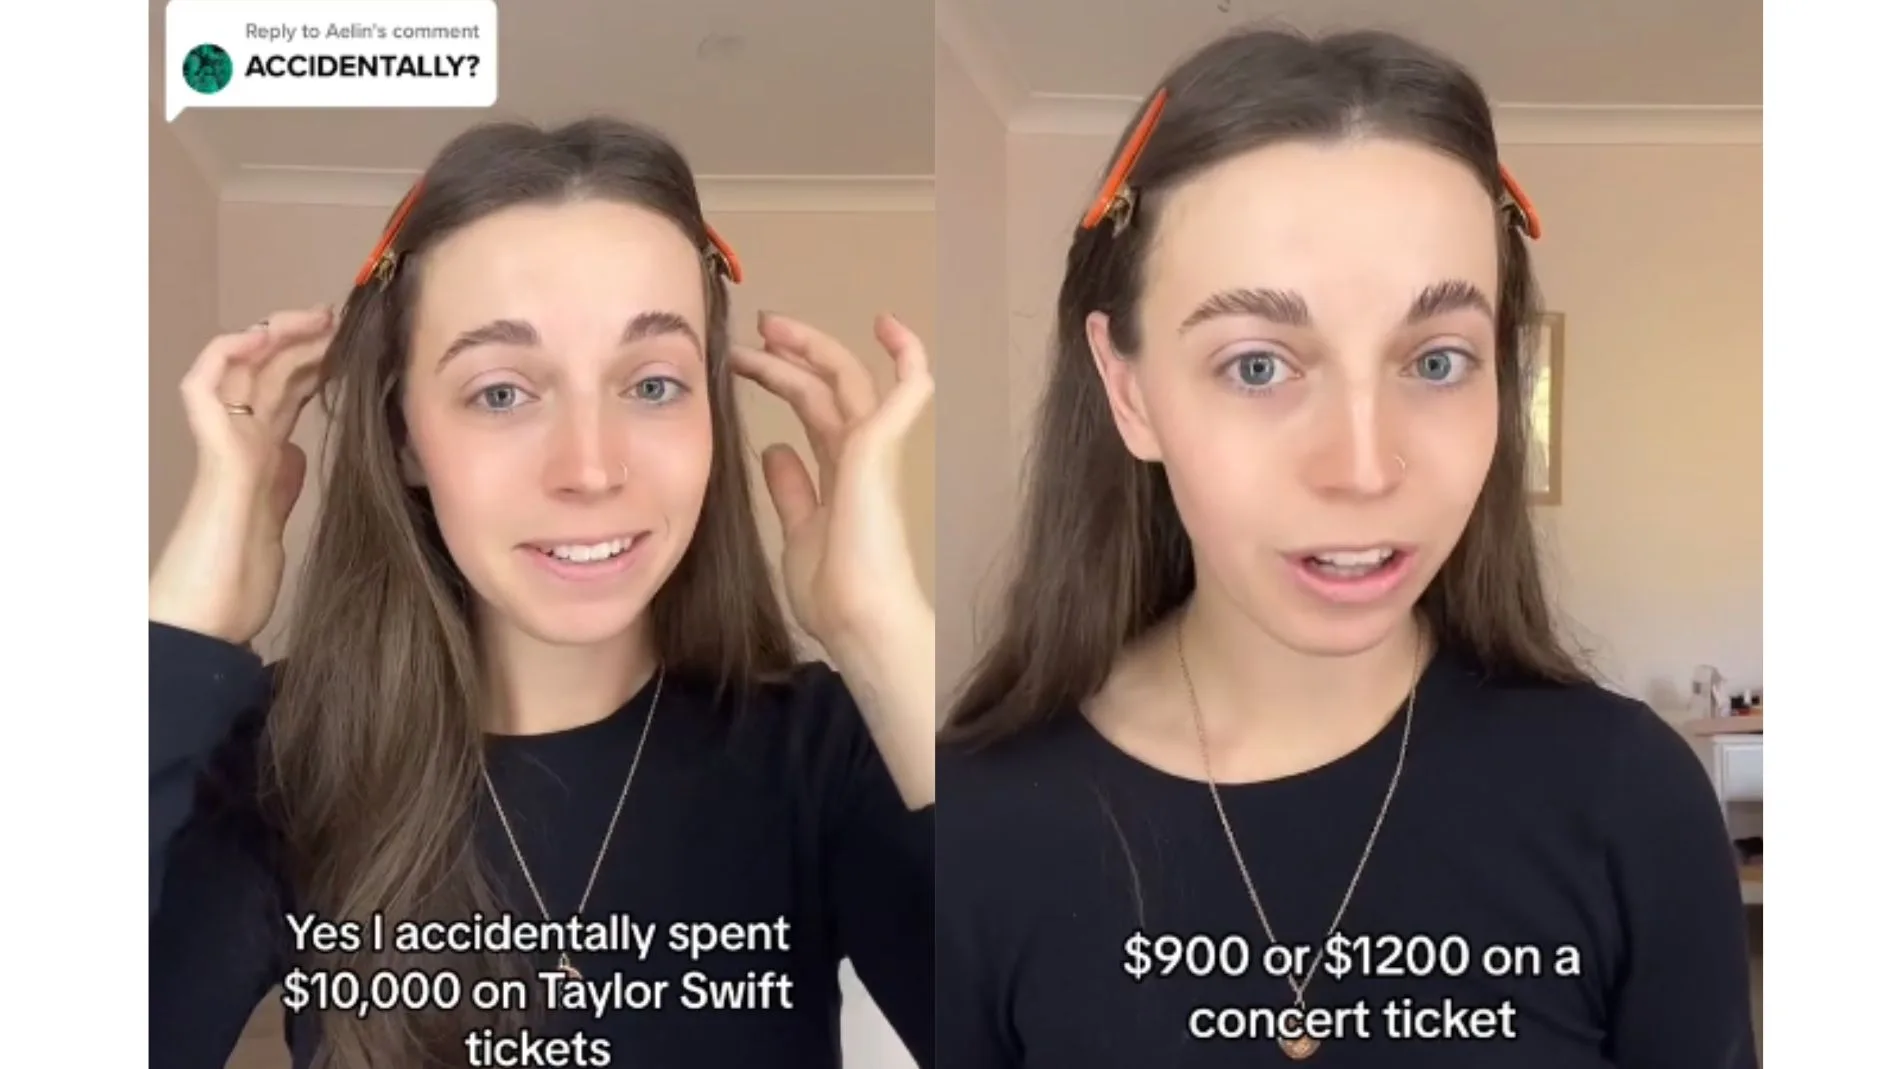 La joven ha explicado cómo se ha gastado 10.000 dólares en entradas para ver a Taylor Swift